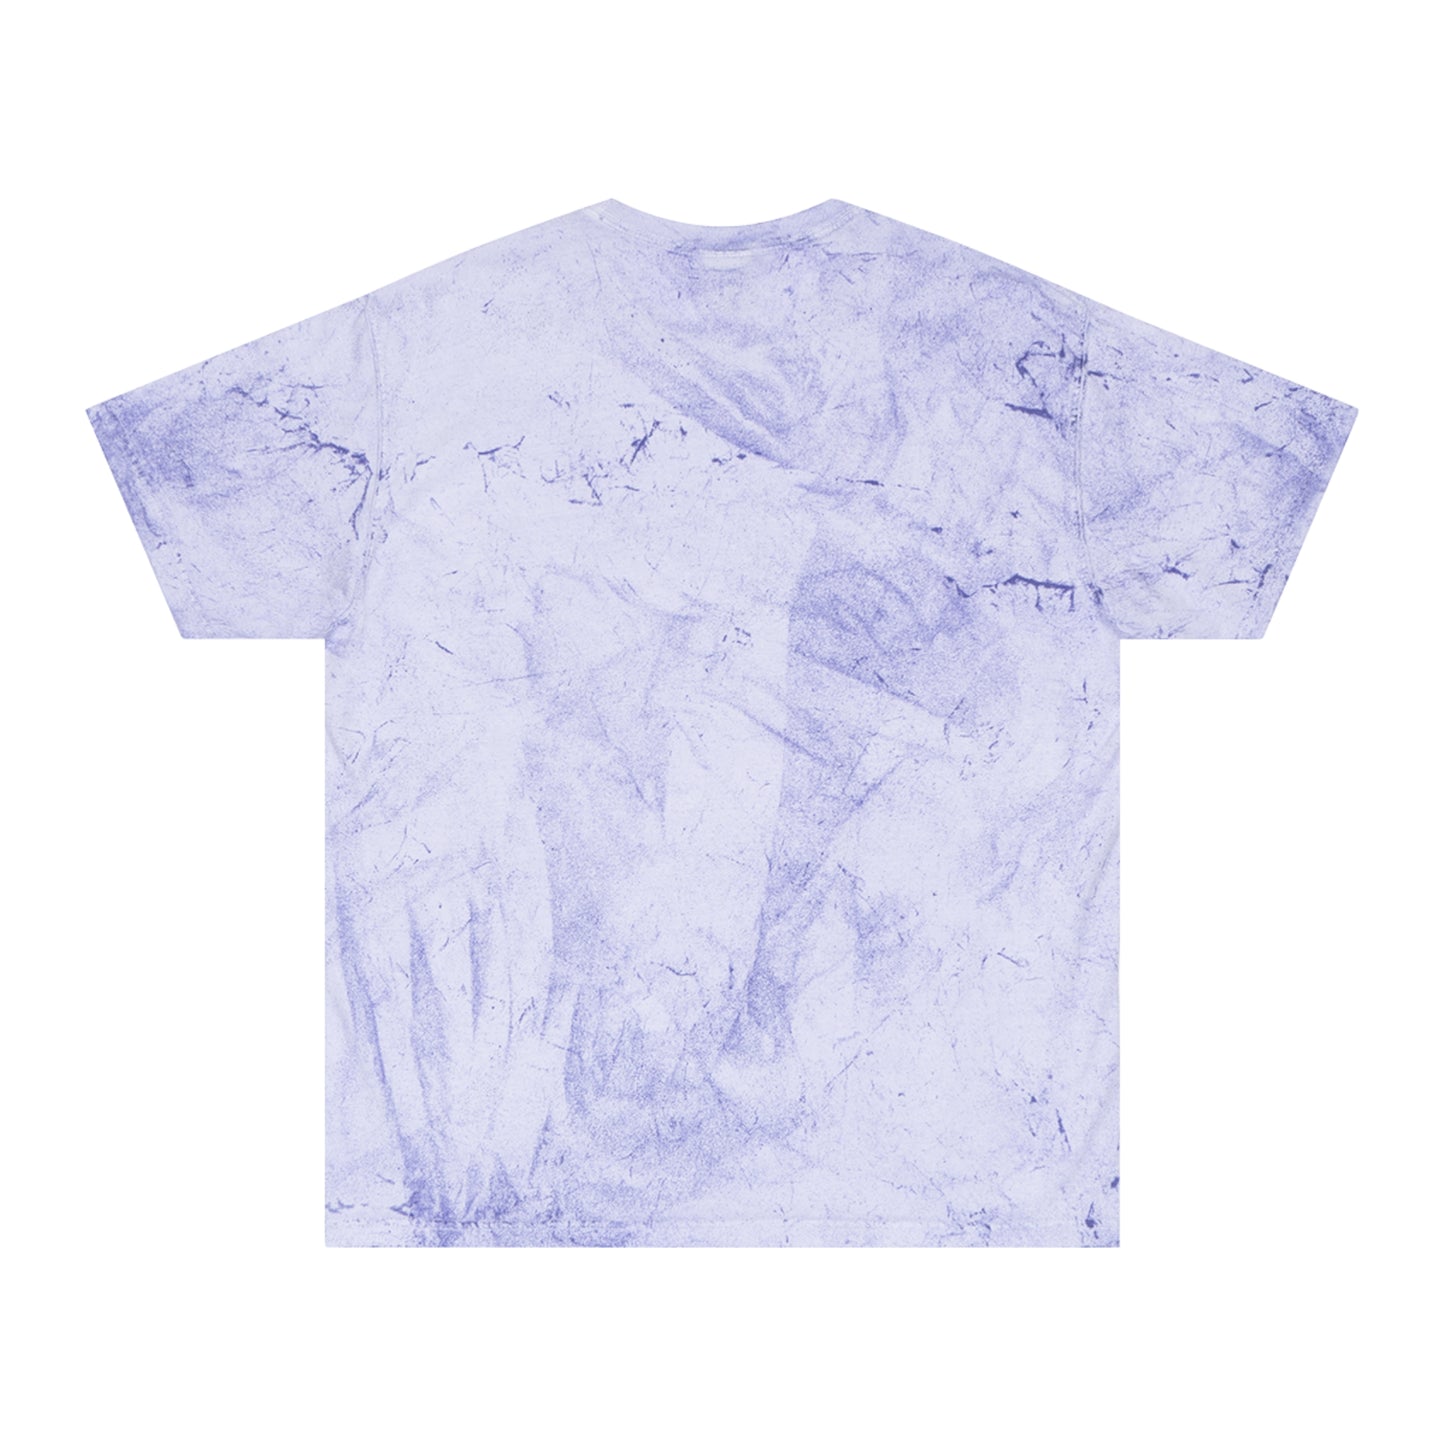 Purple MAMA T-shirt